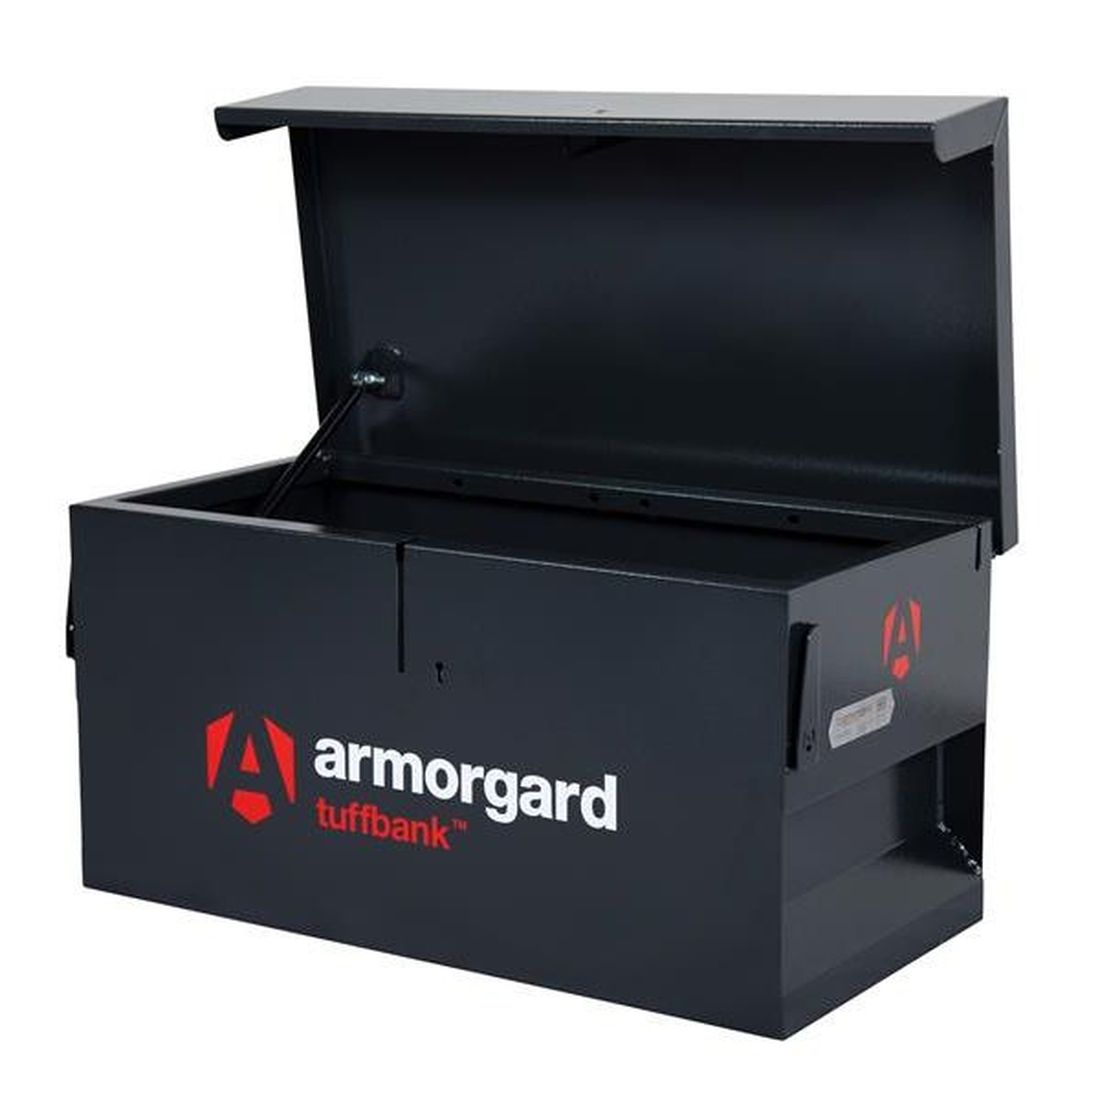 Armorgard TB1 TuffBank Van Box             